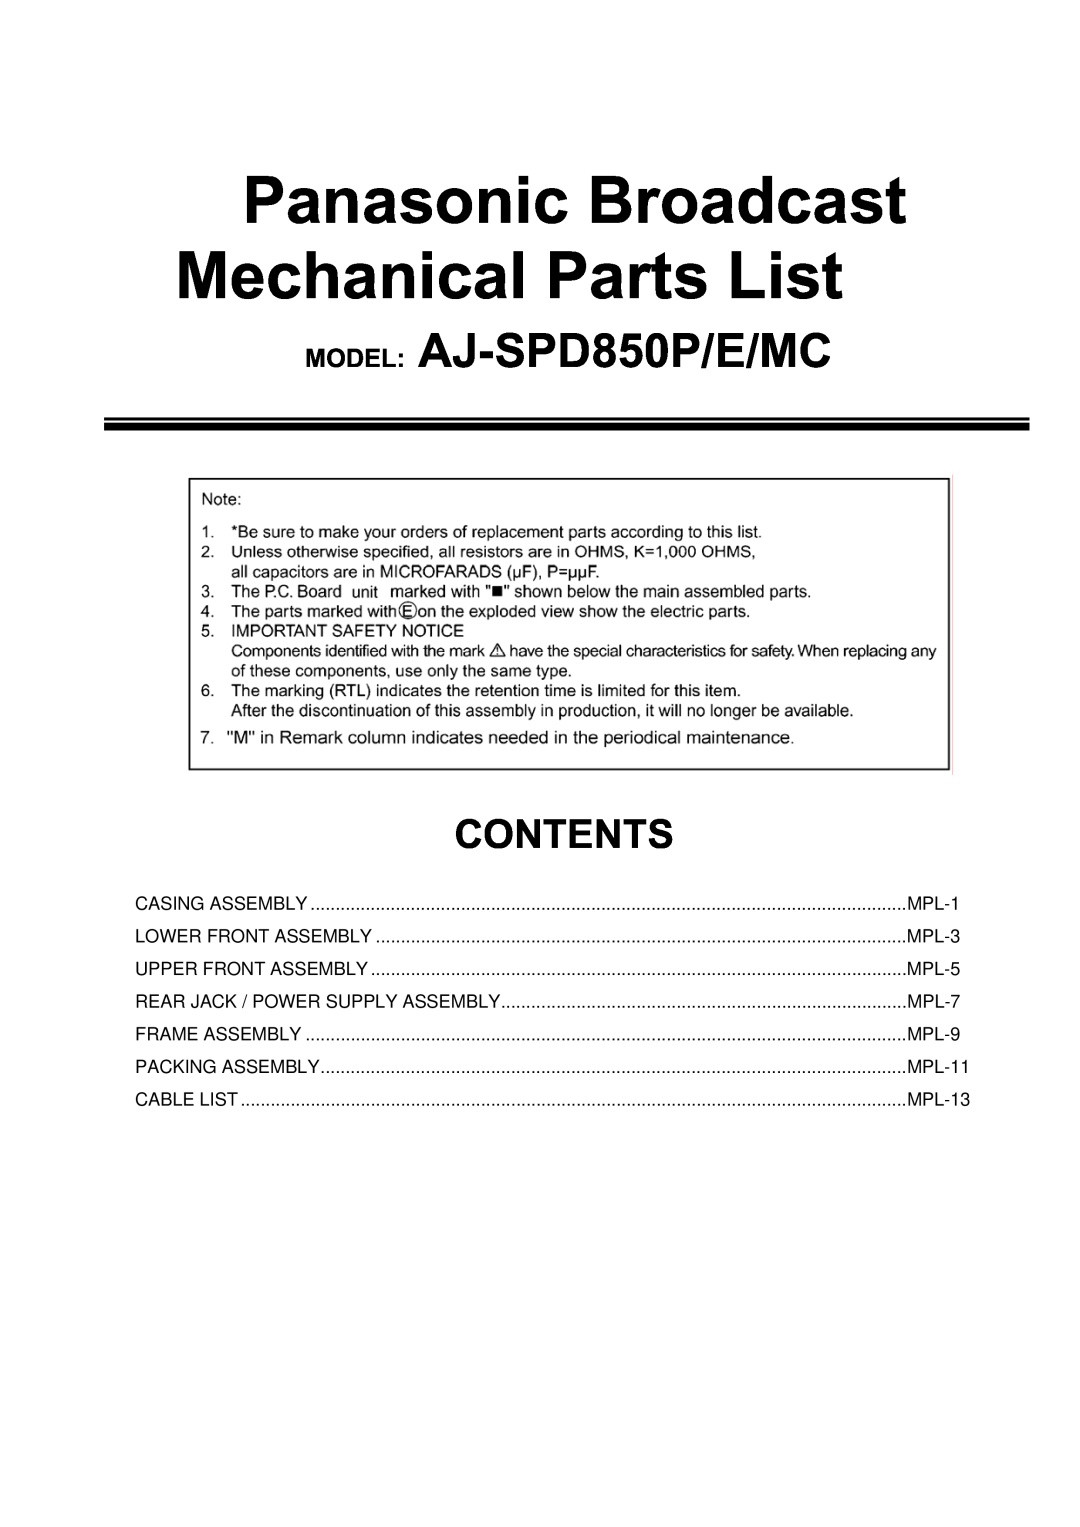 Panasonic AJ-SPD850MC manual MPL-3, MPL-5, MPL-7, MPL-9, MPL-11, MPL-13, Panasonic Broadcast Mechanical Parts List 